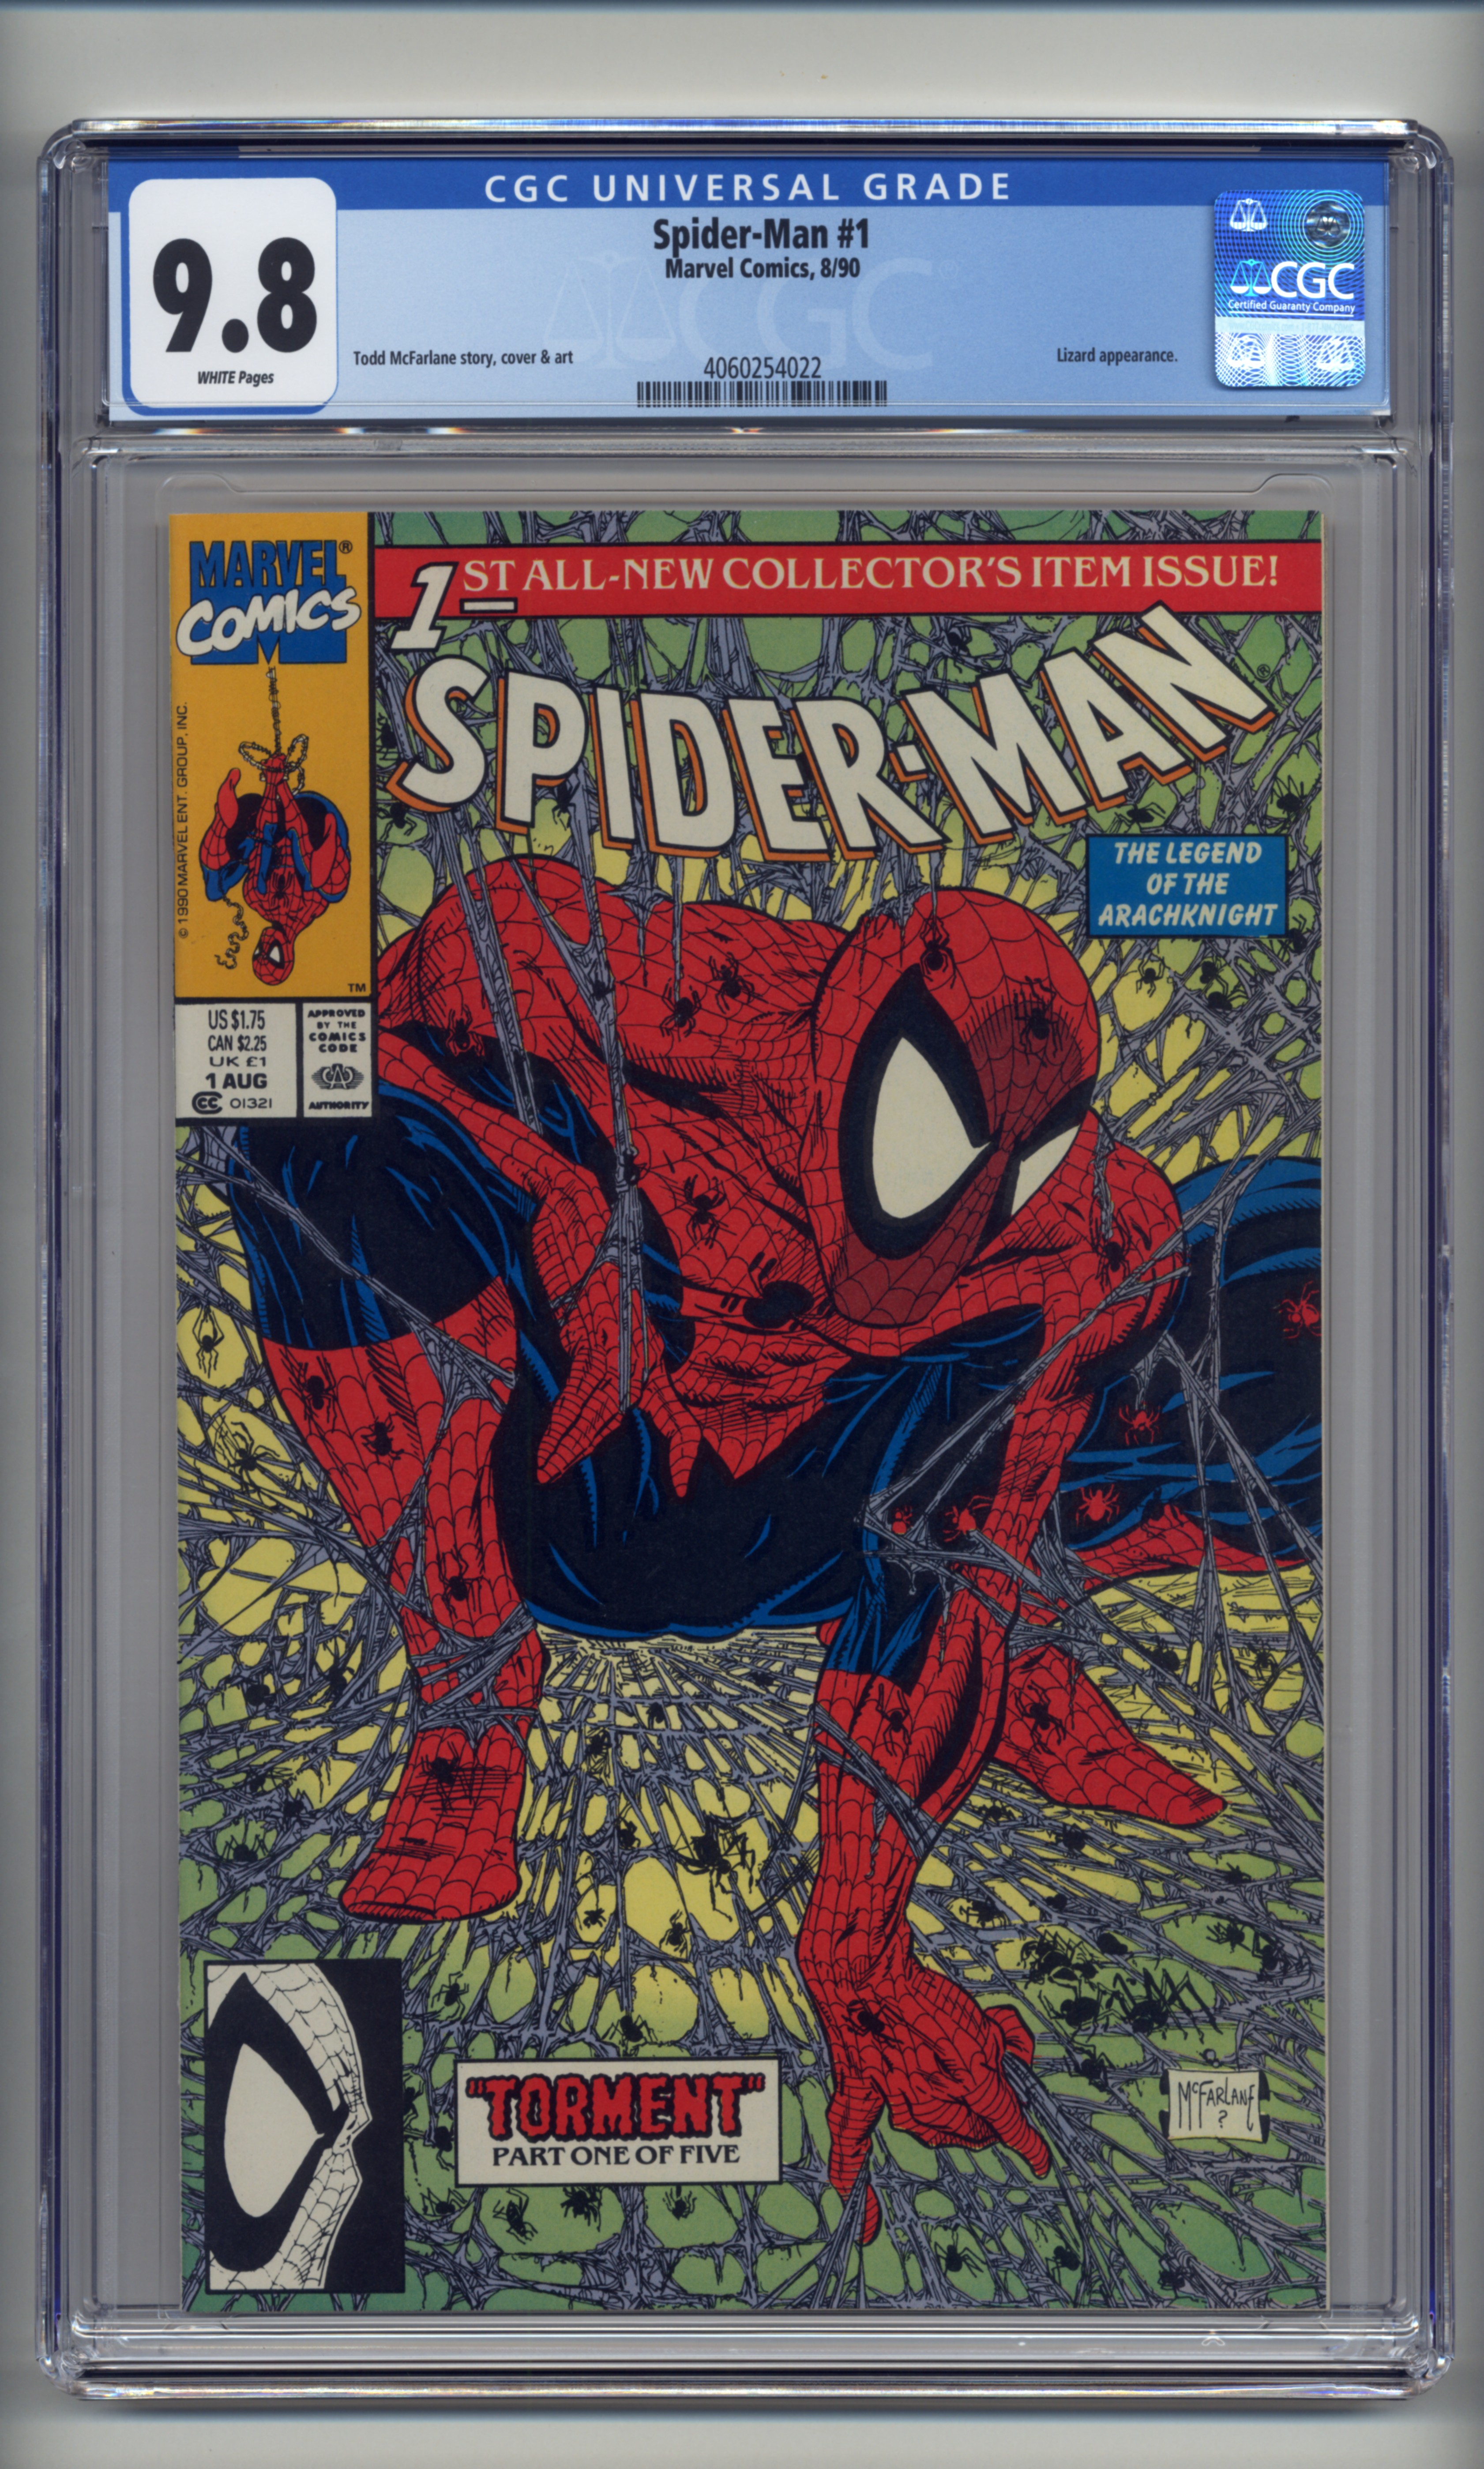 Spider-Man-1-Regular-4060254022-fc.jpg